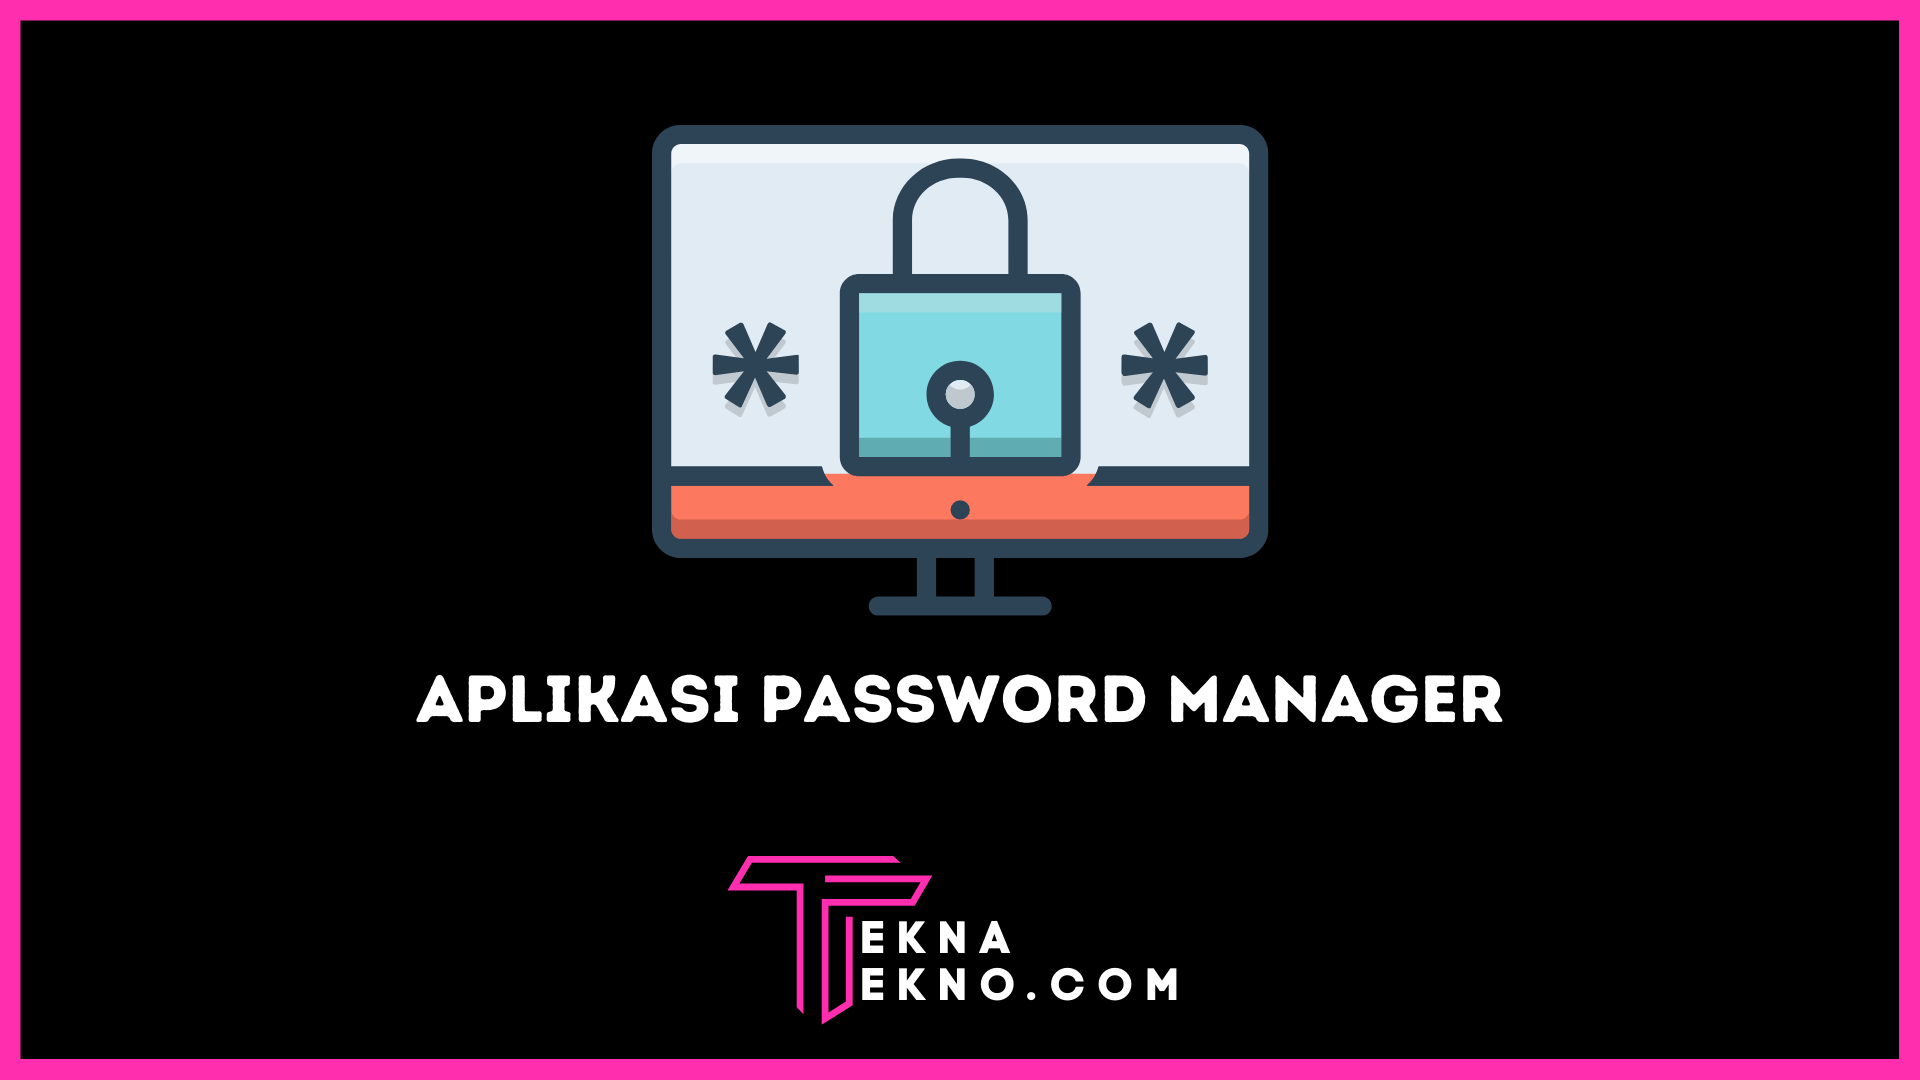 Rekomendasi Aplikasi Password Manager Terbaik dan Aman